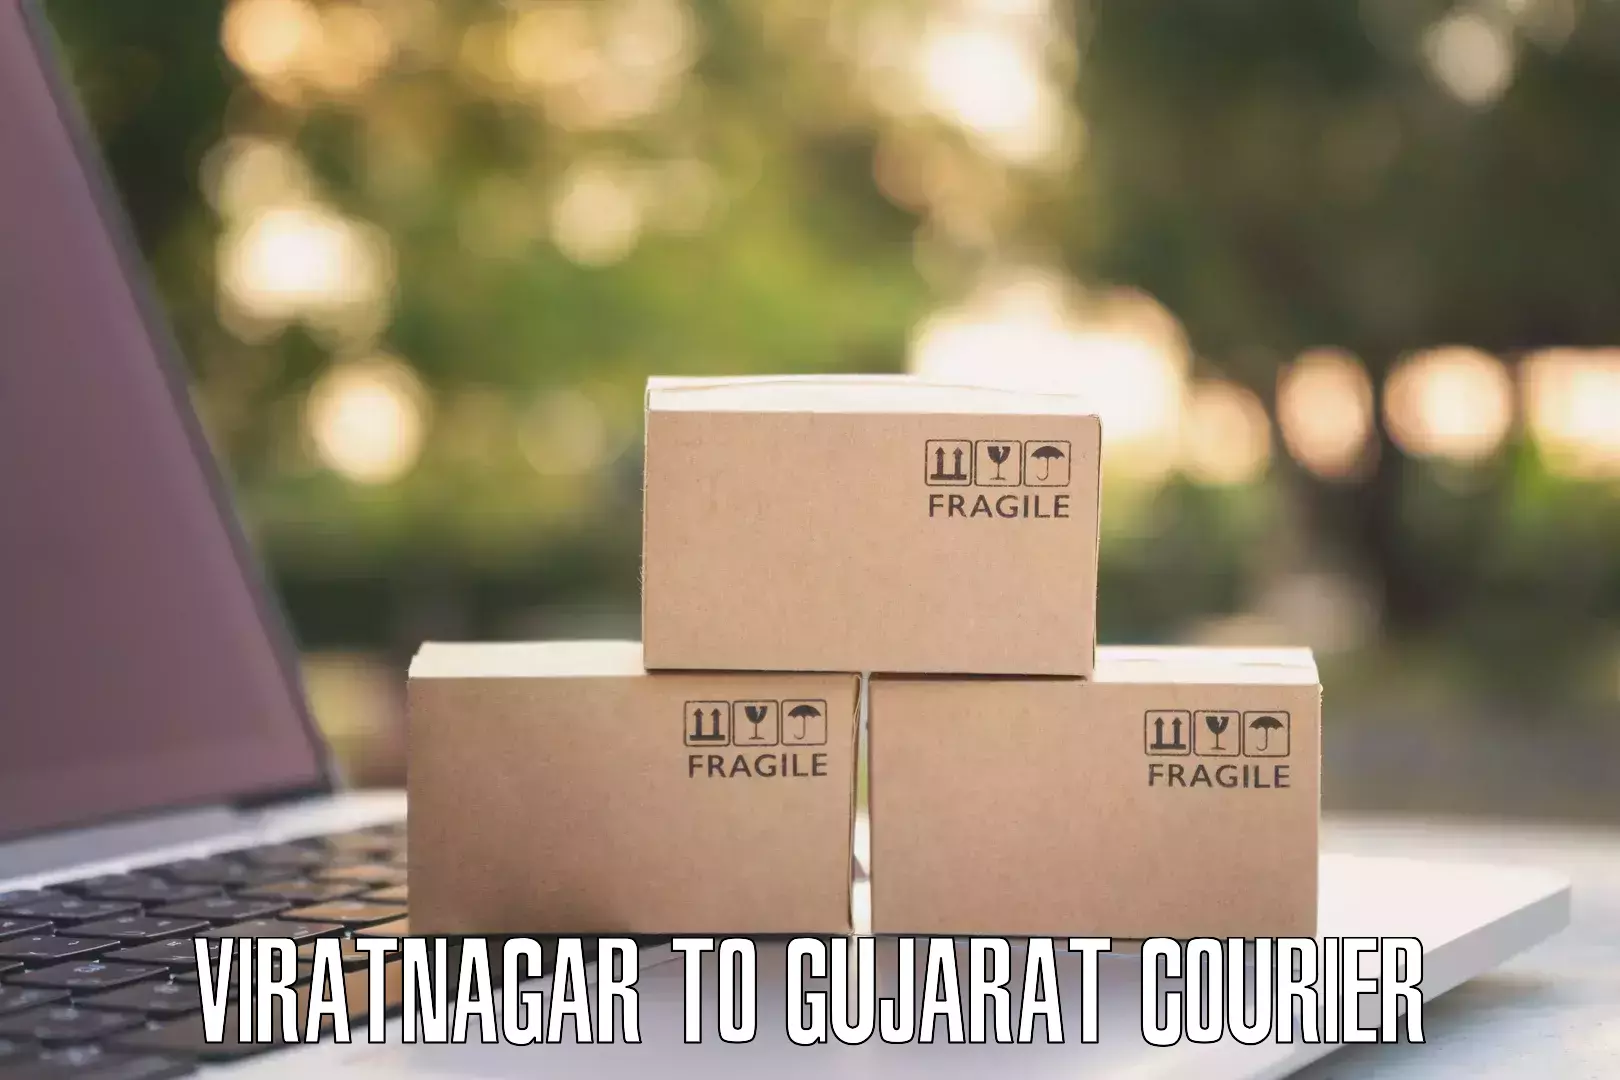 International logistics solutions Viratnagar to Gujarat